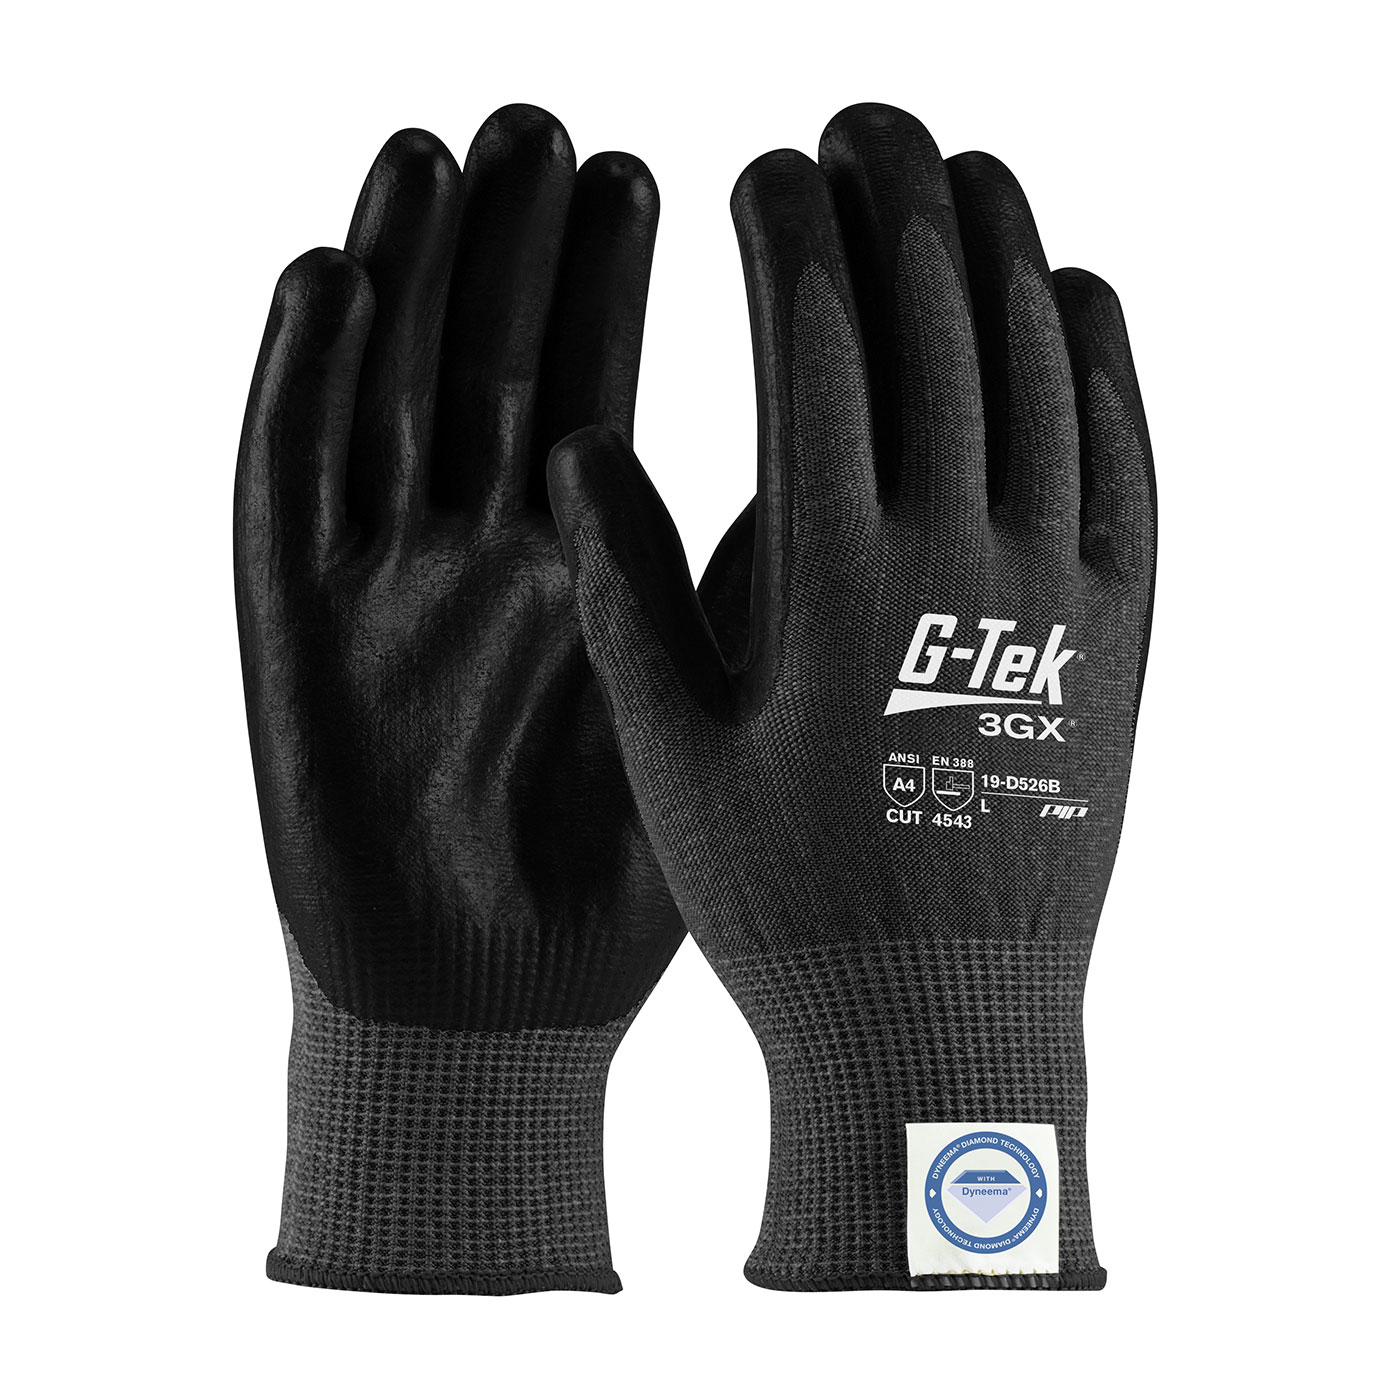 19-D526B PIP®G-Tek®3GX®黑色无缝针织Dyneema®钻石混合手套，手掌和手指上的聚氨酯涂层光滑握把-触摸屏兼容